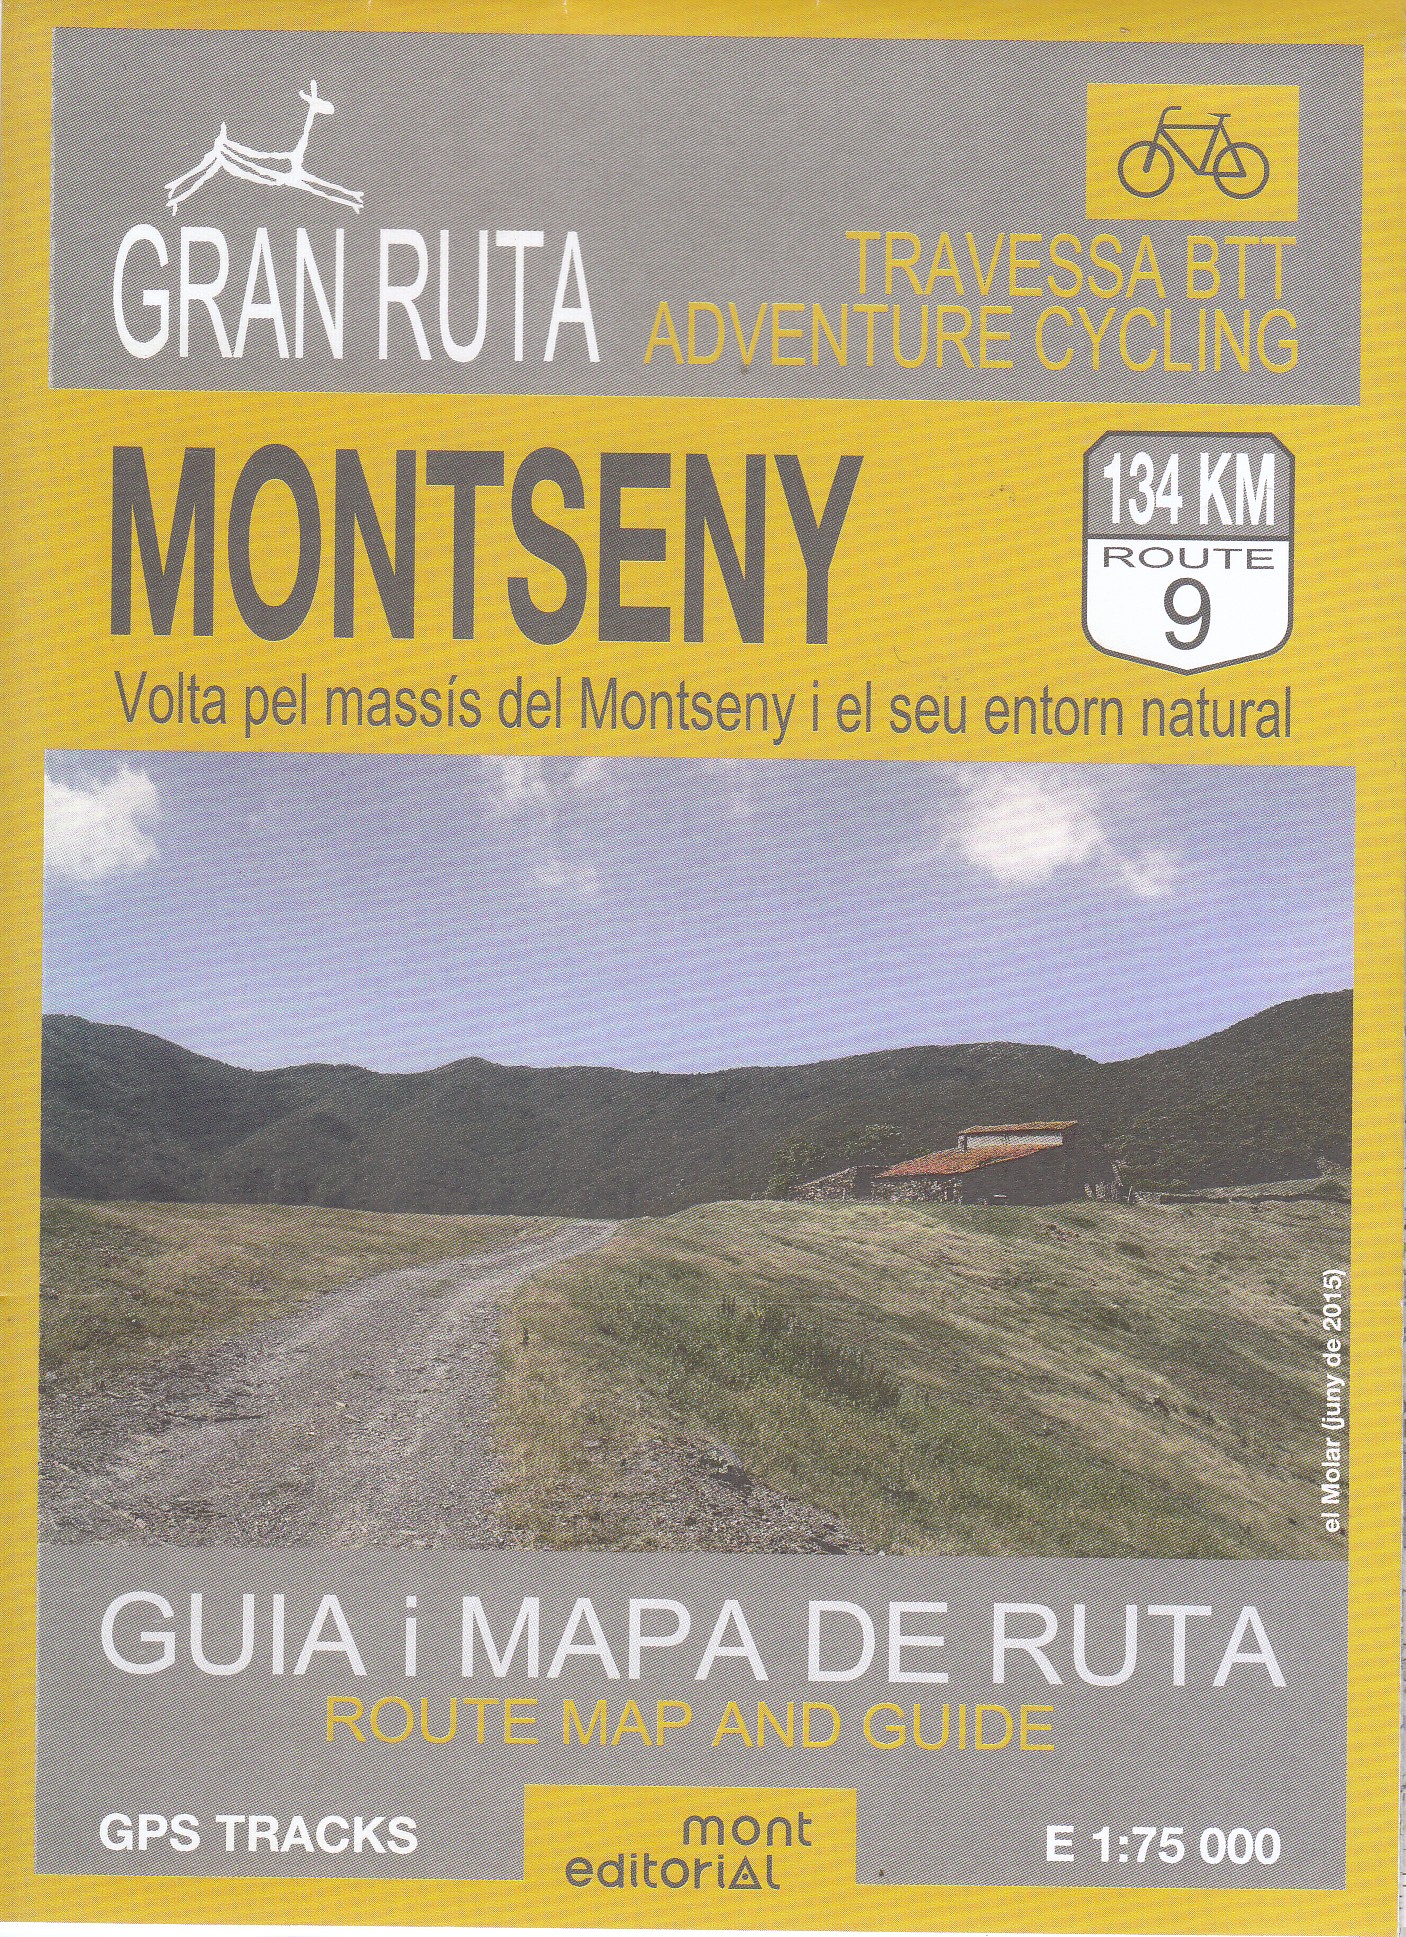 Montseny. Volta pel massís del Montseny i el seu entorn natural 